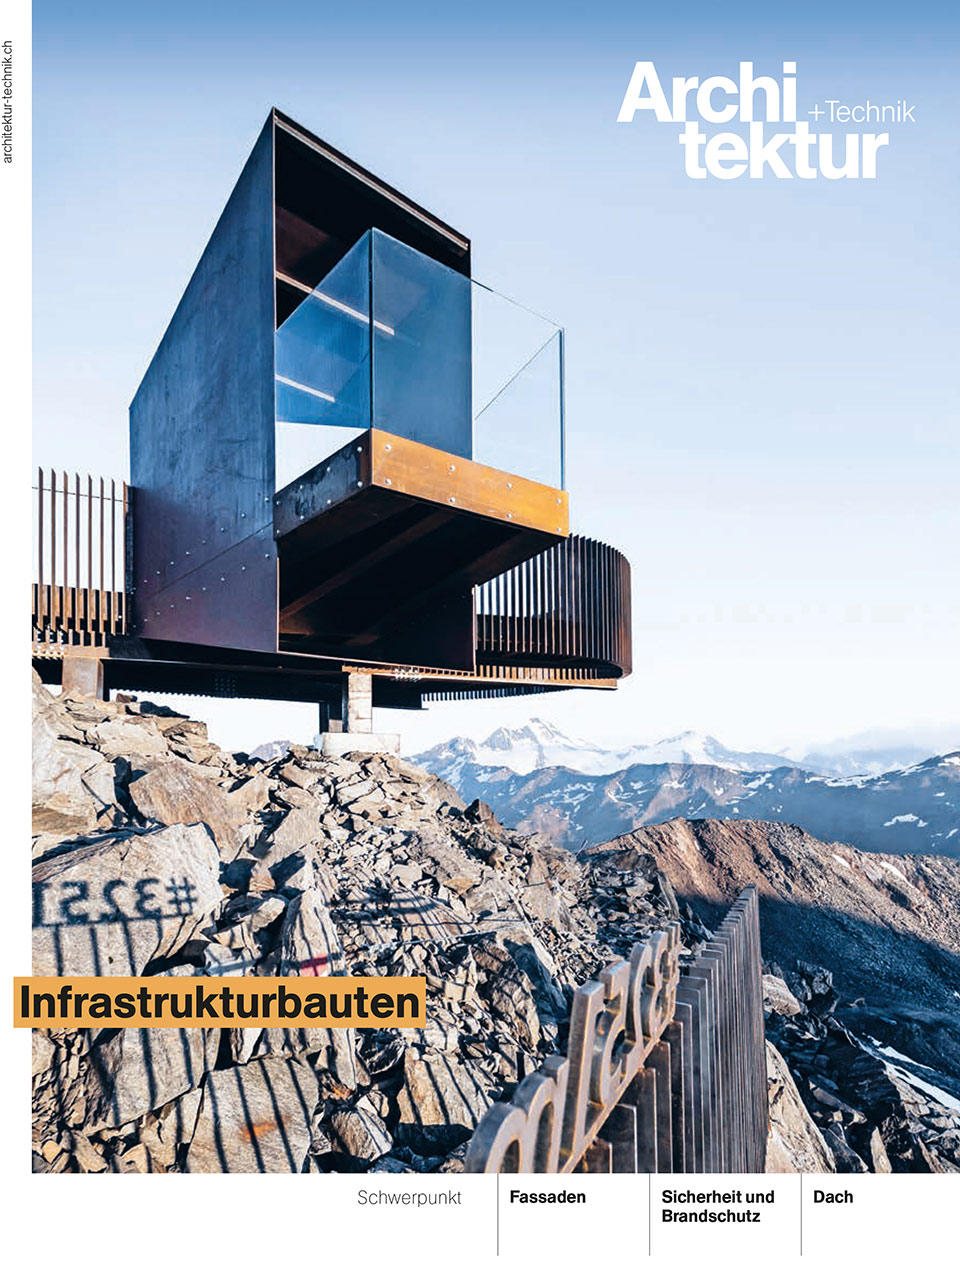 Achitektur + Technik, Titelblatt von Ausgabe 12-2021